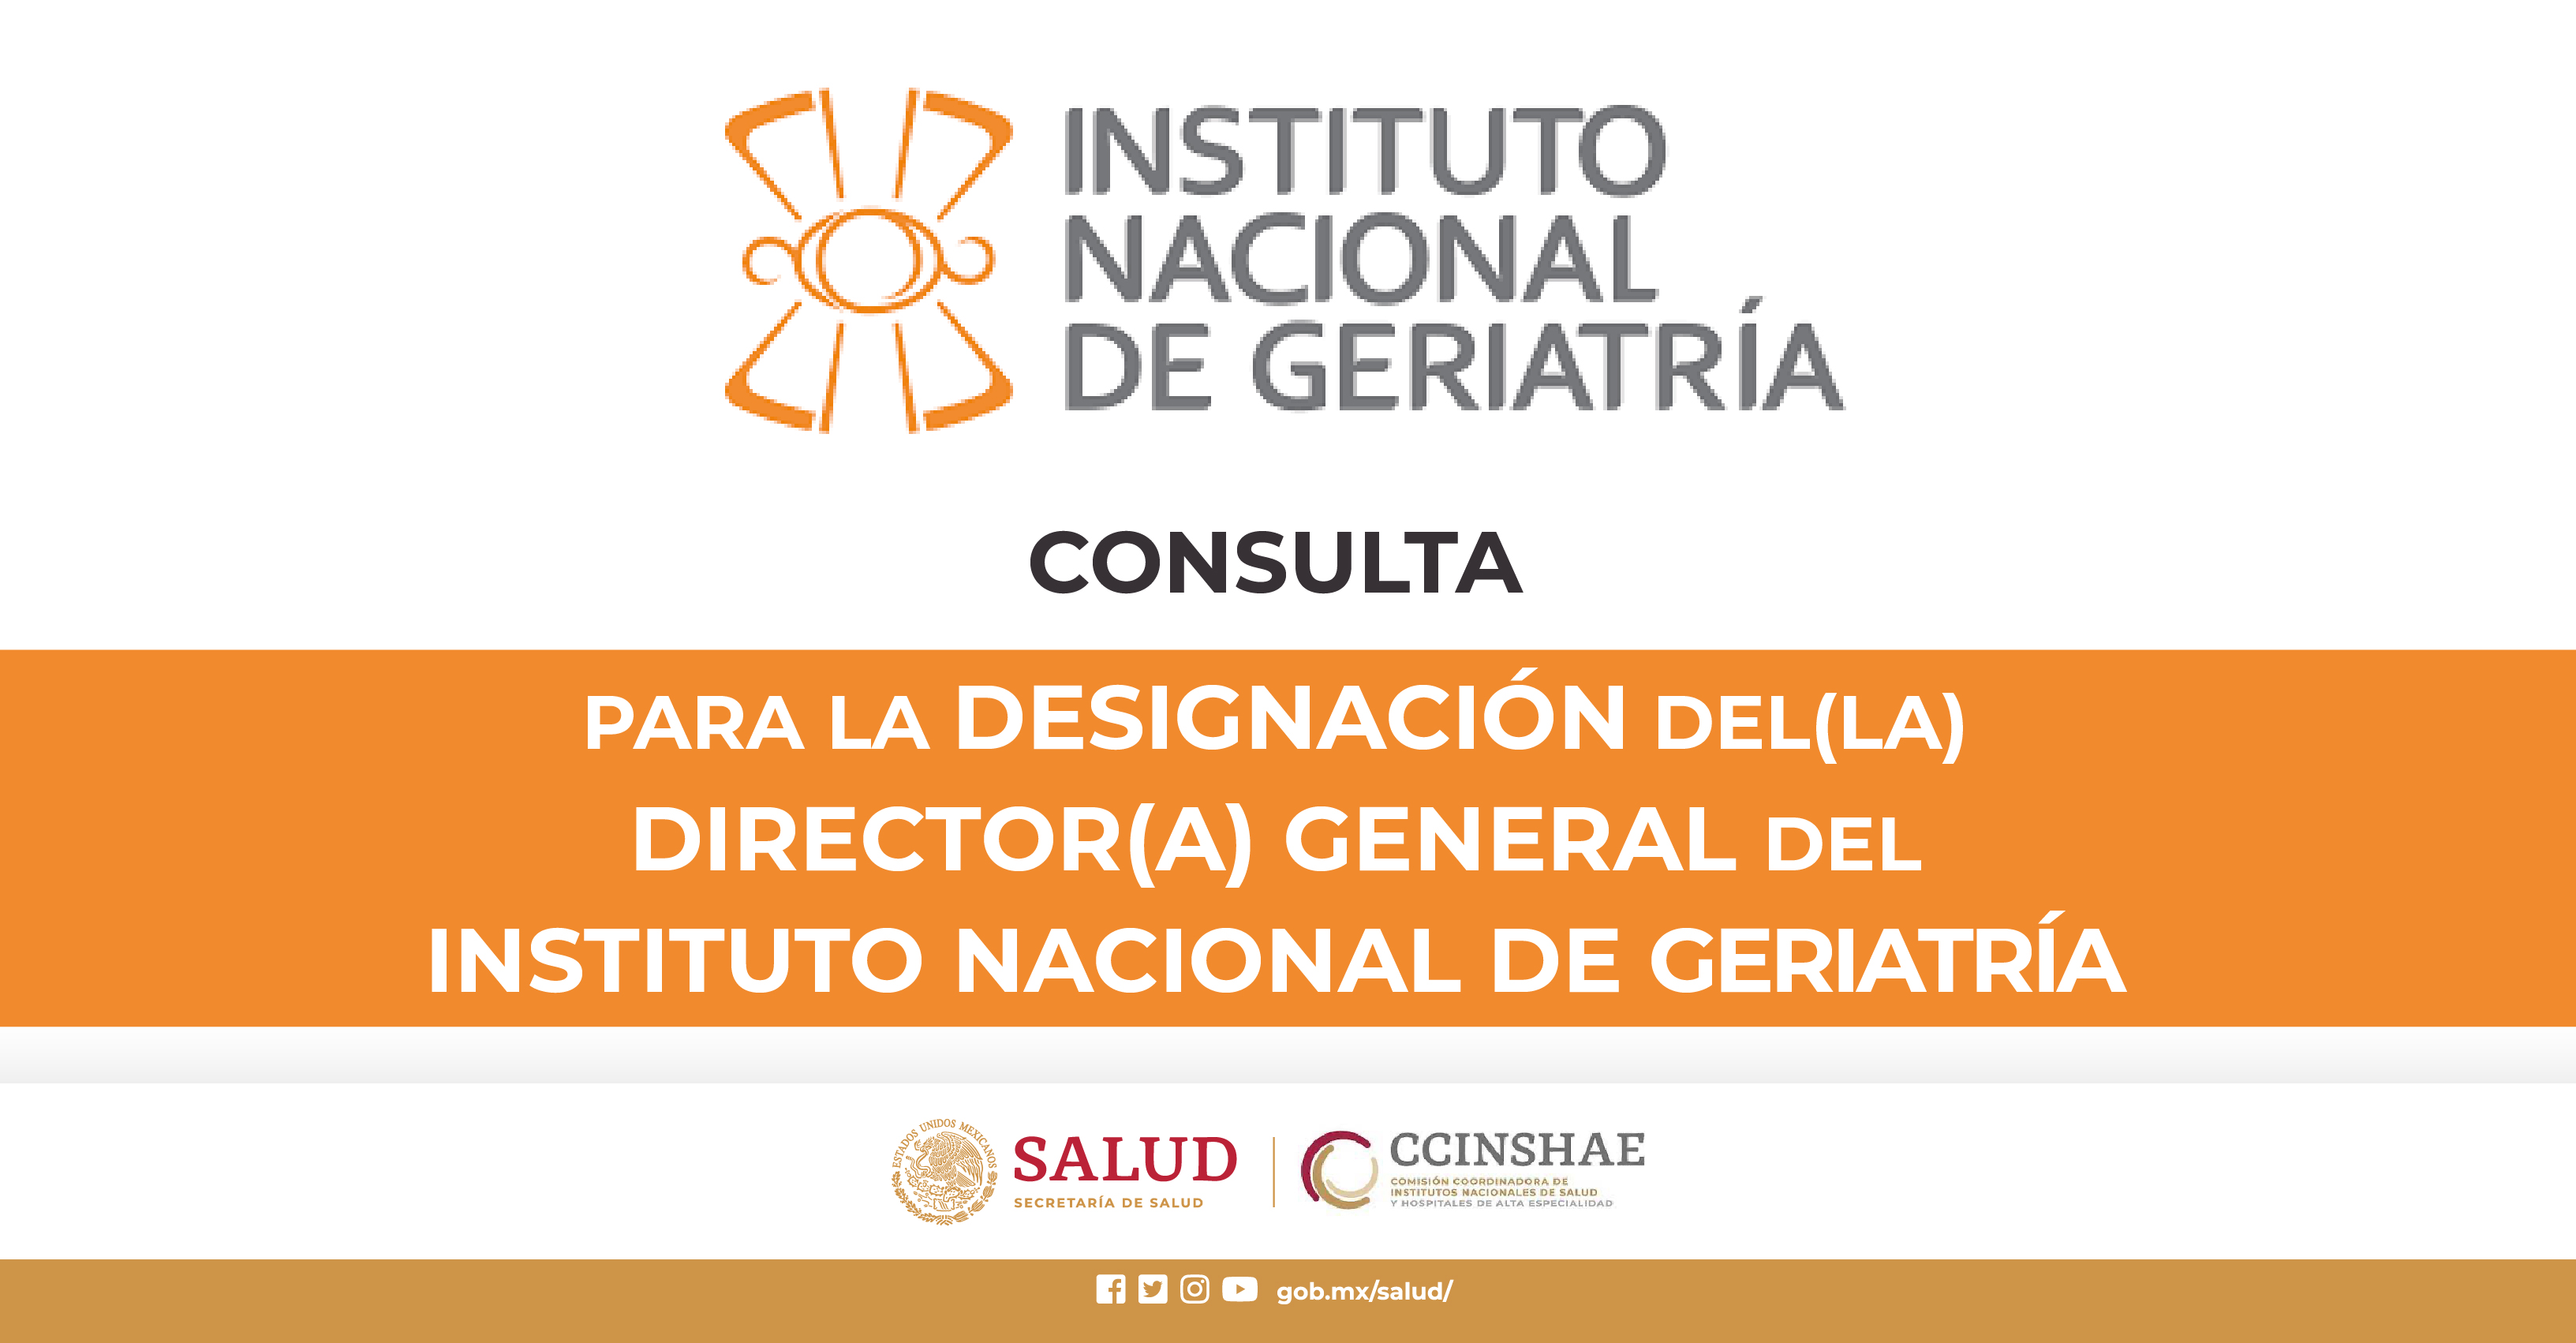 CONSULTA PARA LA DESIGNACIÓN DEL (LA) DIRECTOR(A) GENERAL DEL INSTITUTO NACIONAL DE GERIATRÍA